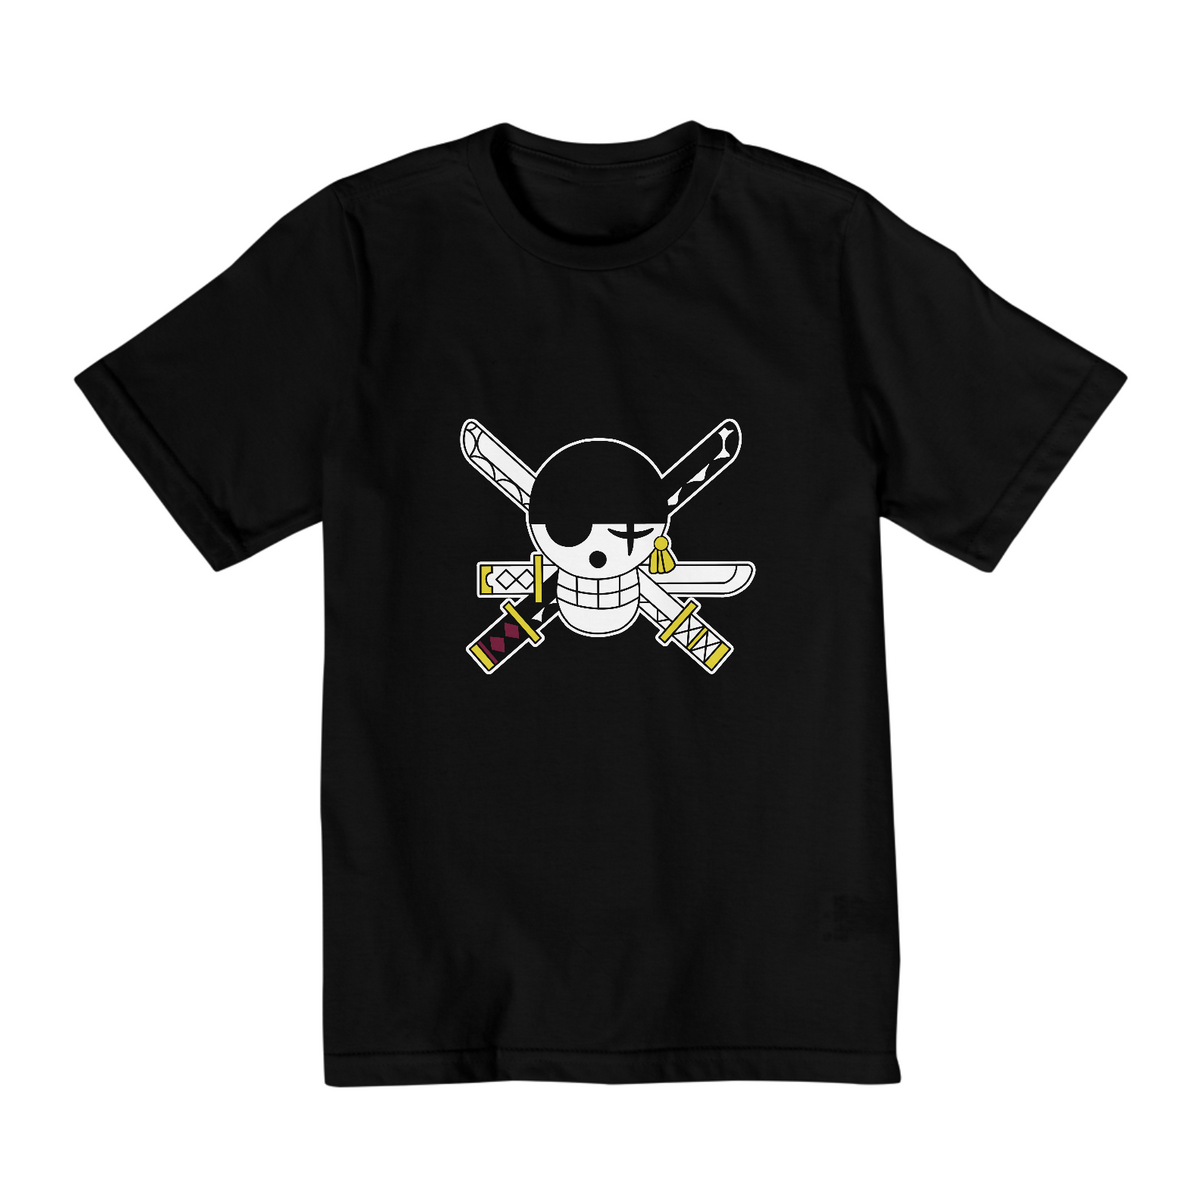 Nome do produto: Camiseta Juvenil Bandeira Zoro - Coleção One Piece